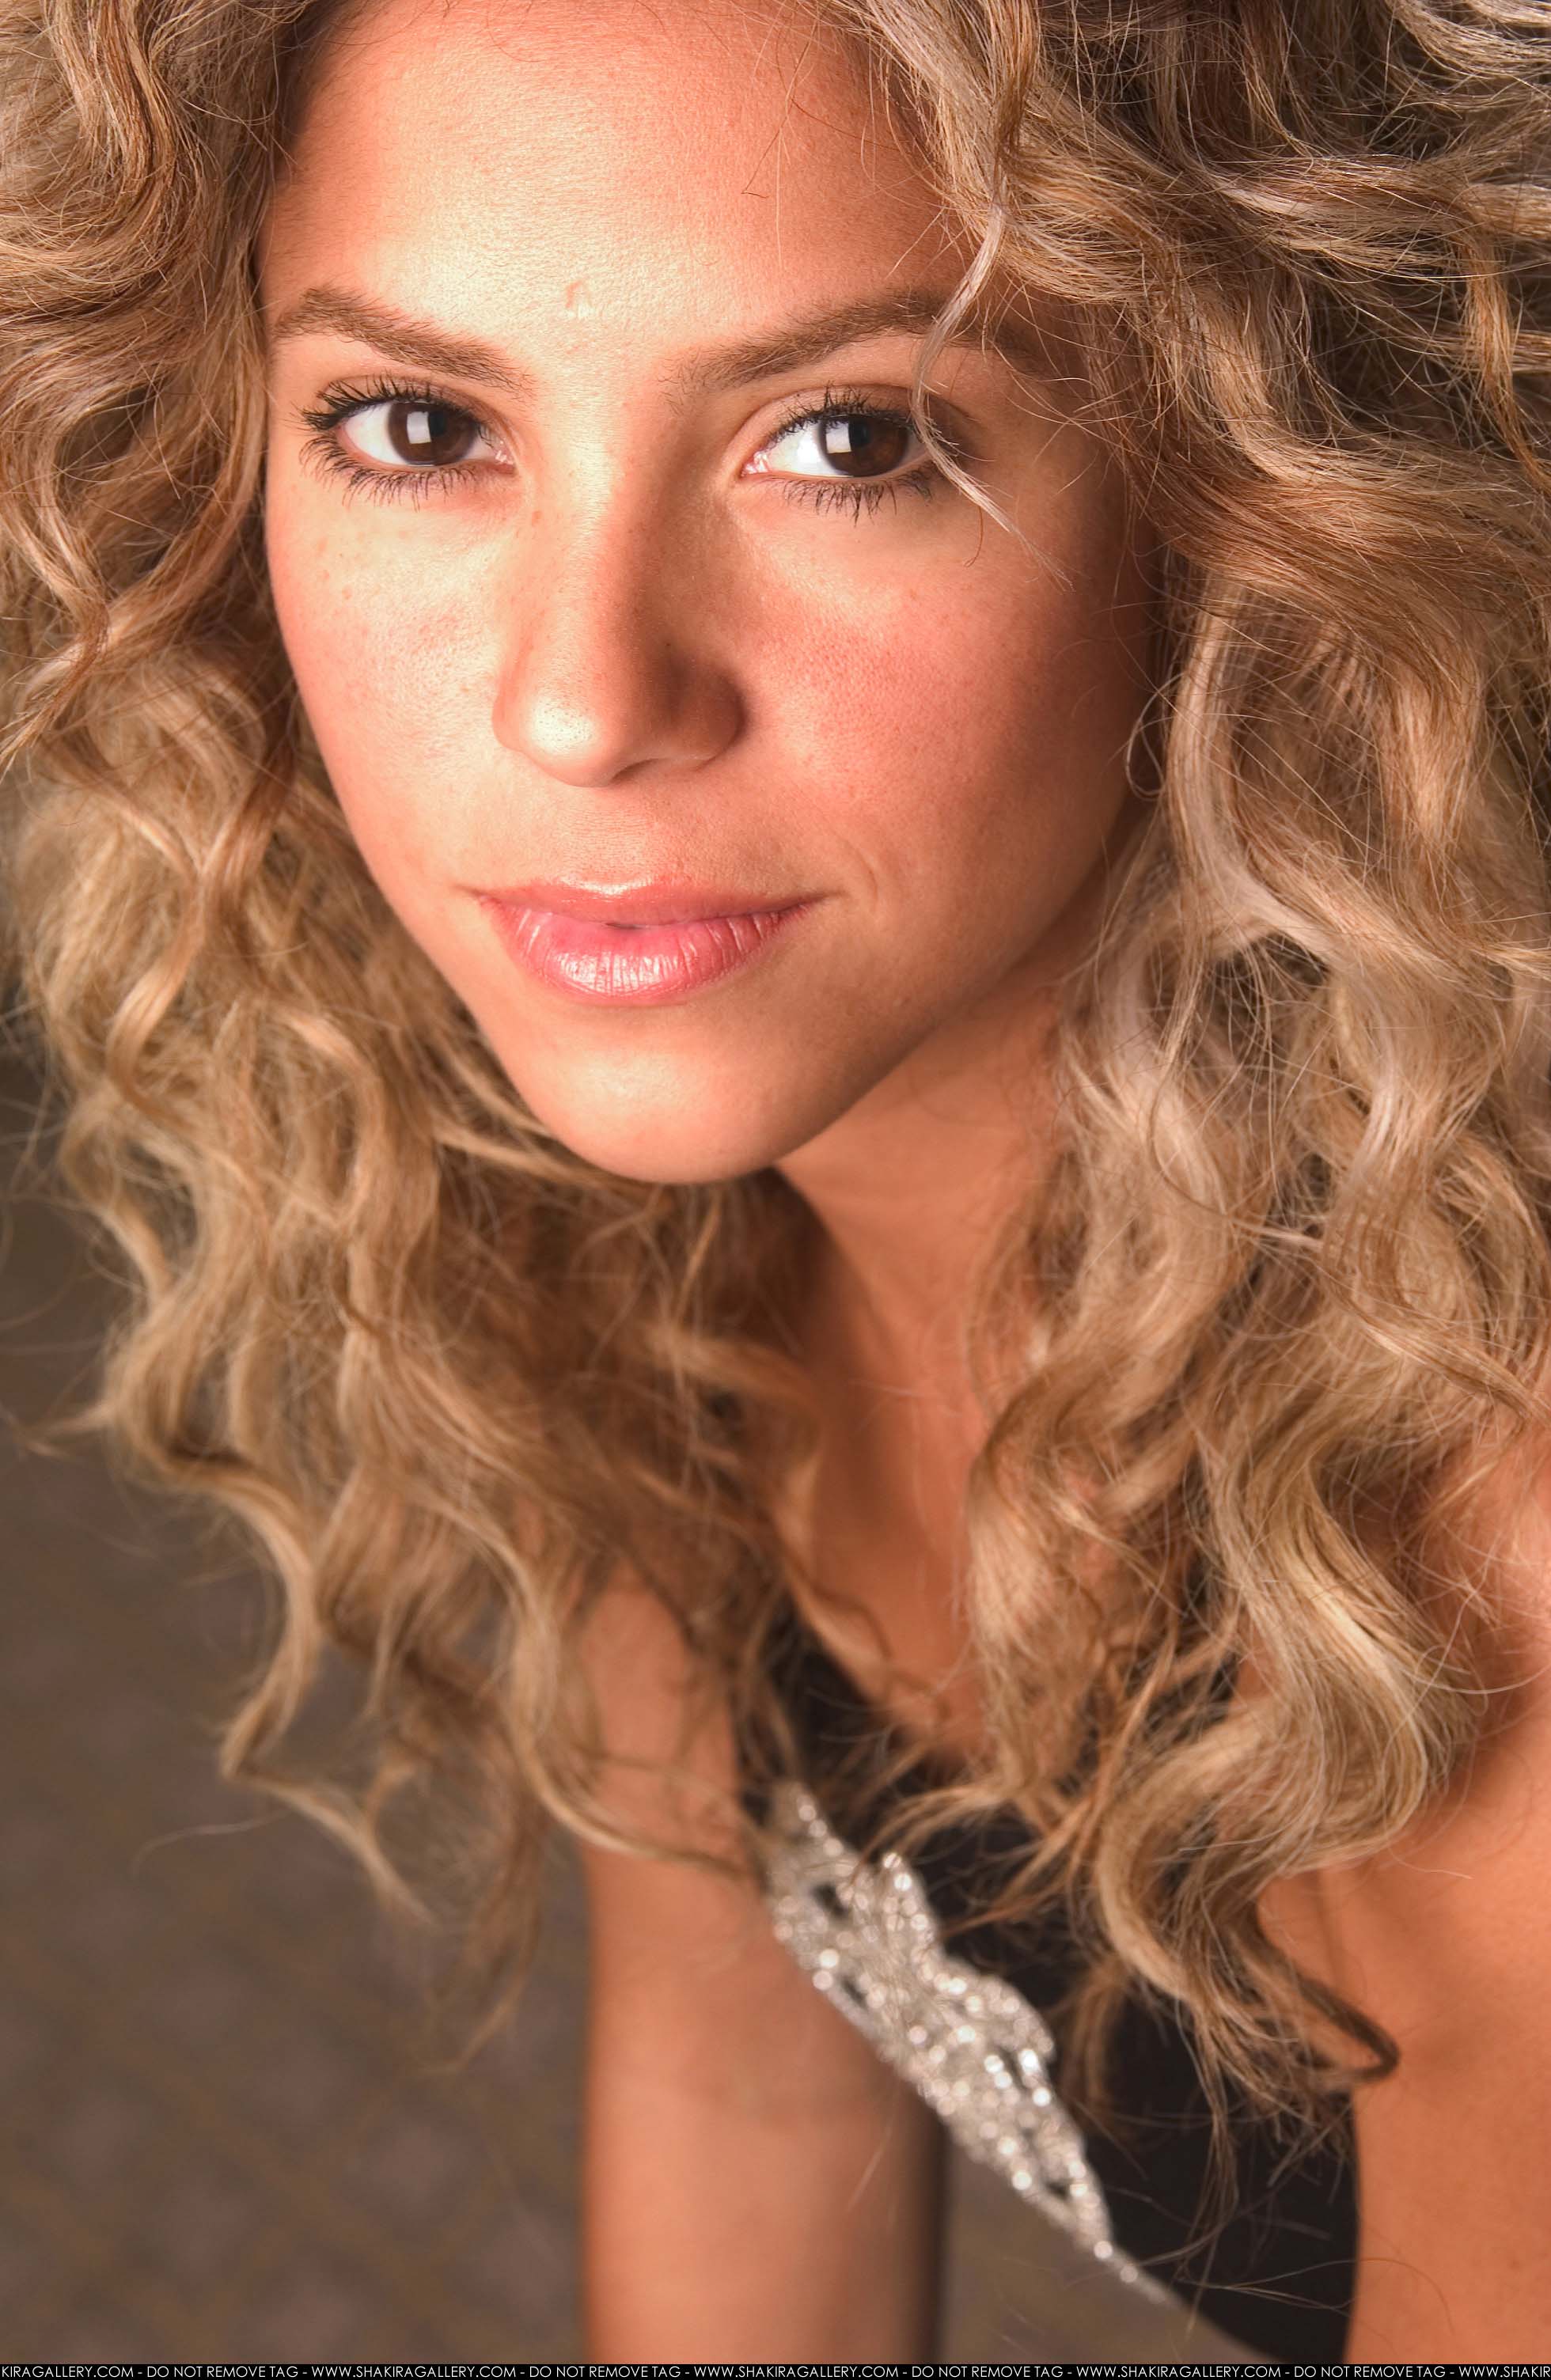 Shakira Mebarak photo #16913